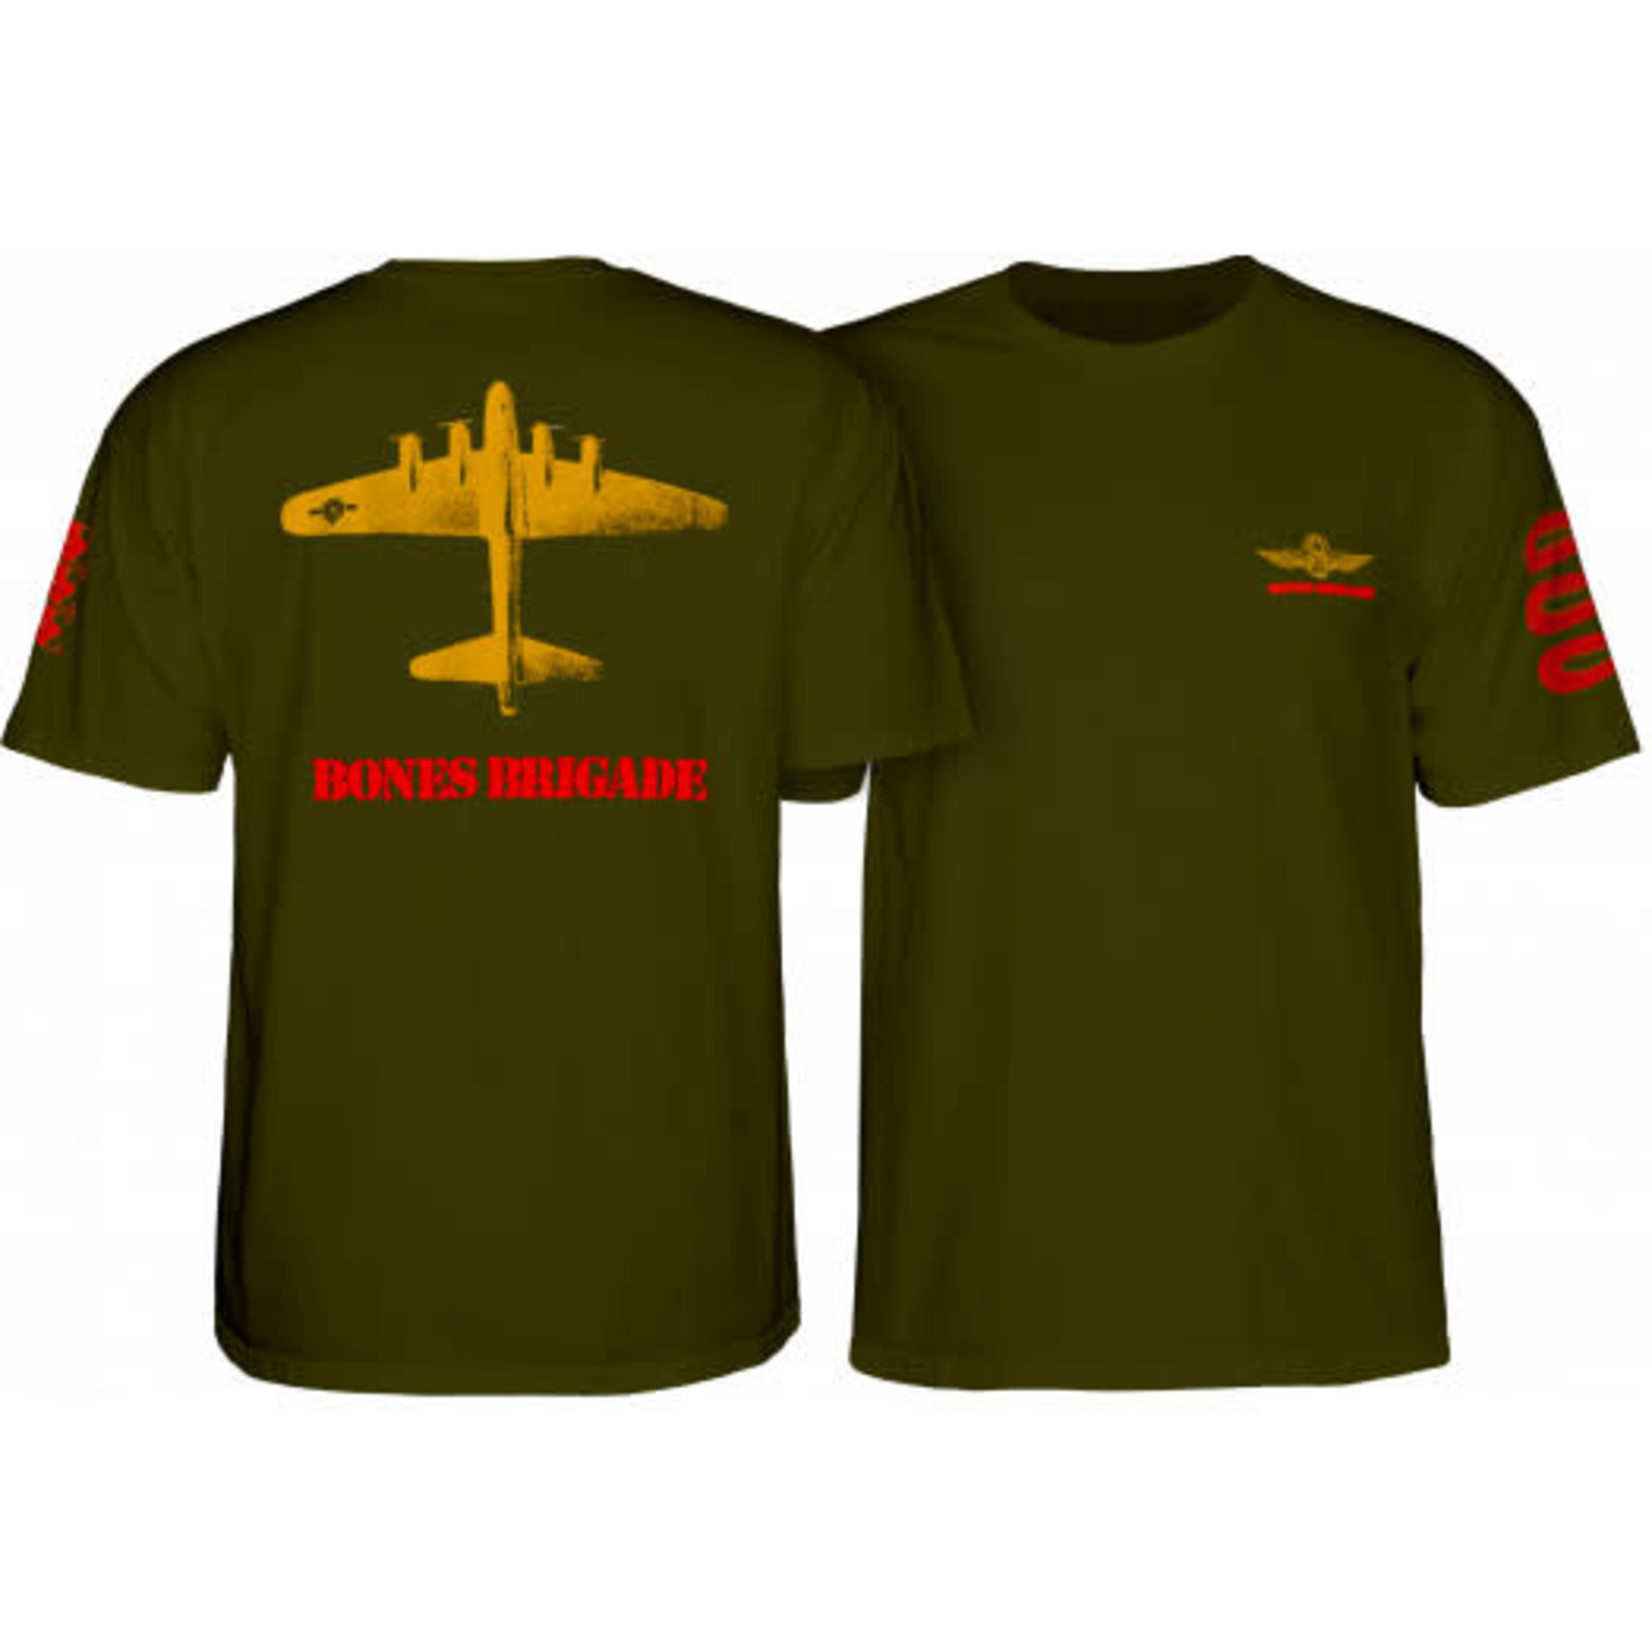 Powell Peralta Powell Peralta Bones Brigade Bomber T-shirt - Green -